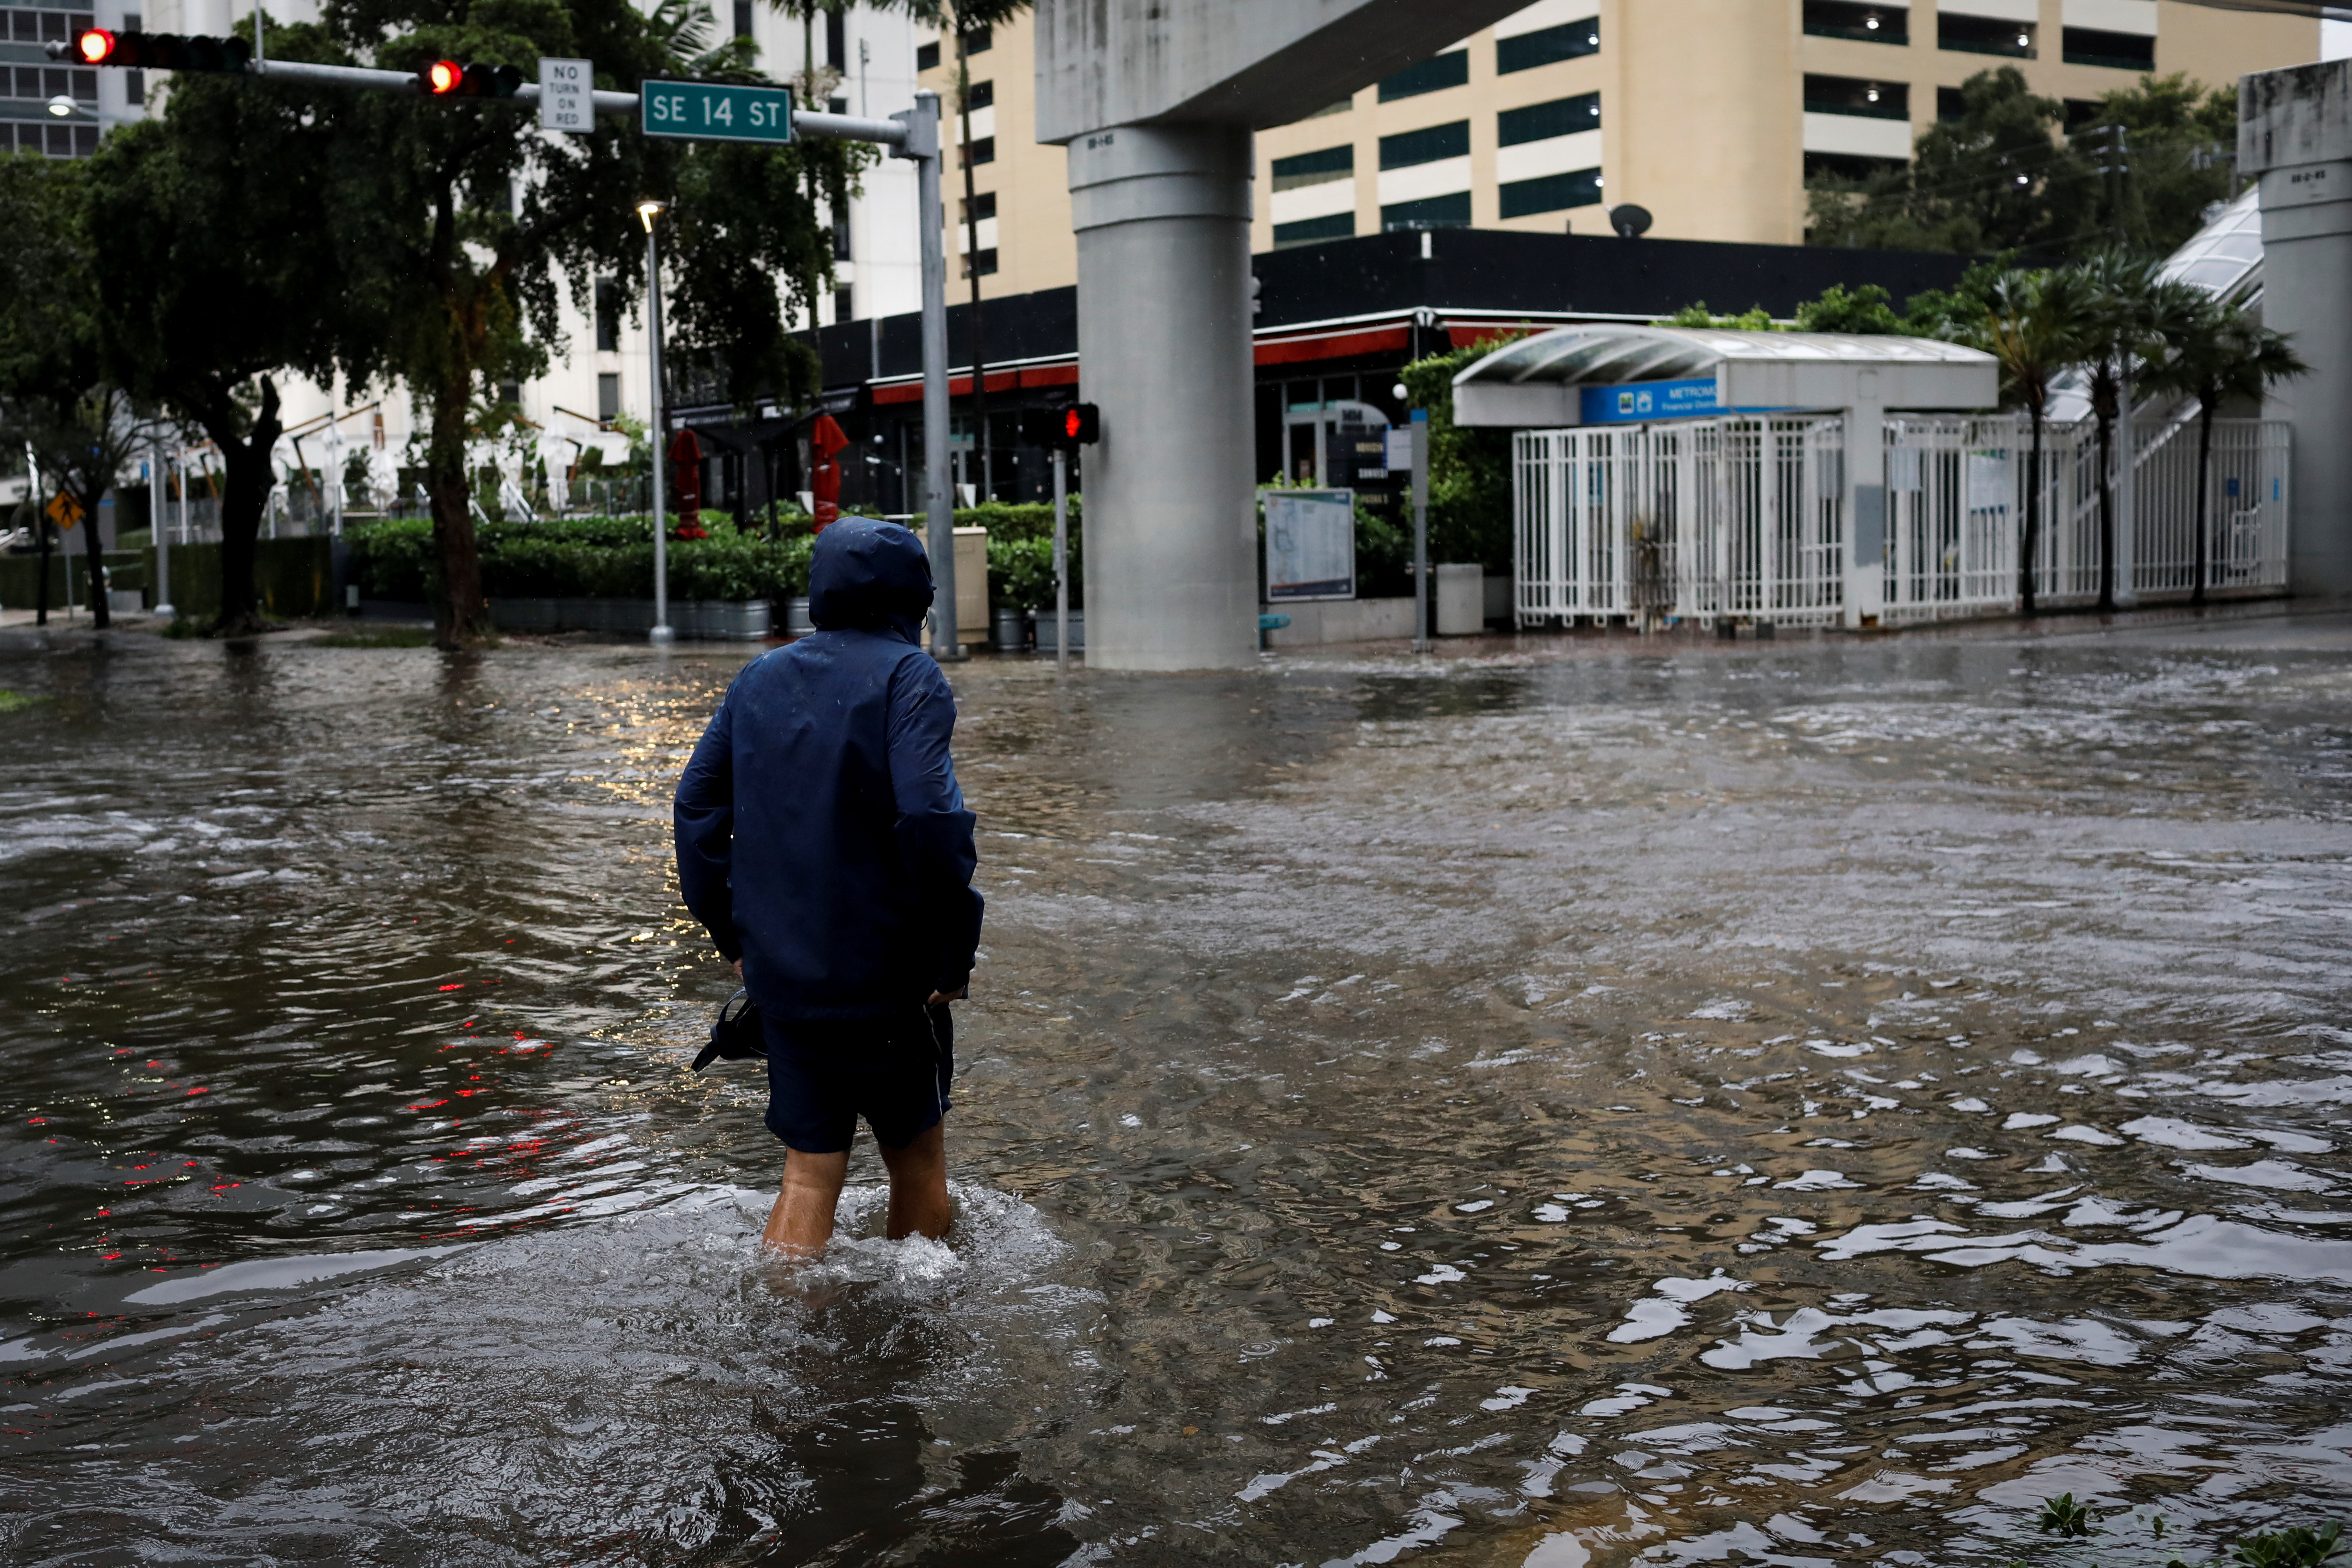 La tormenta tropical Eta dejó inundaciones y cortes de luz en Miami -  Infobae